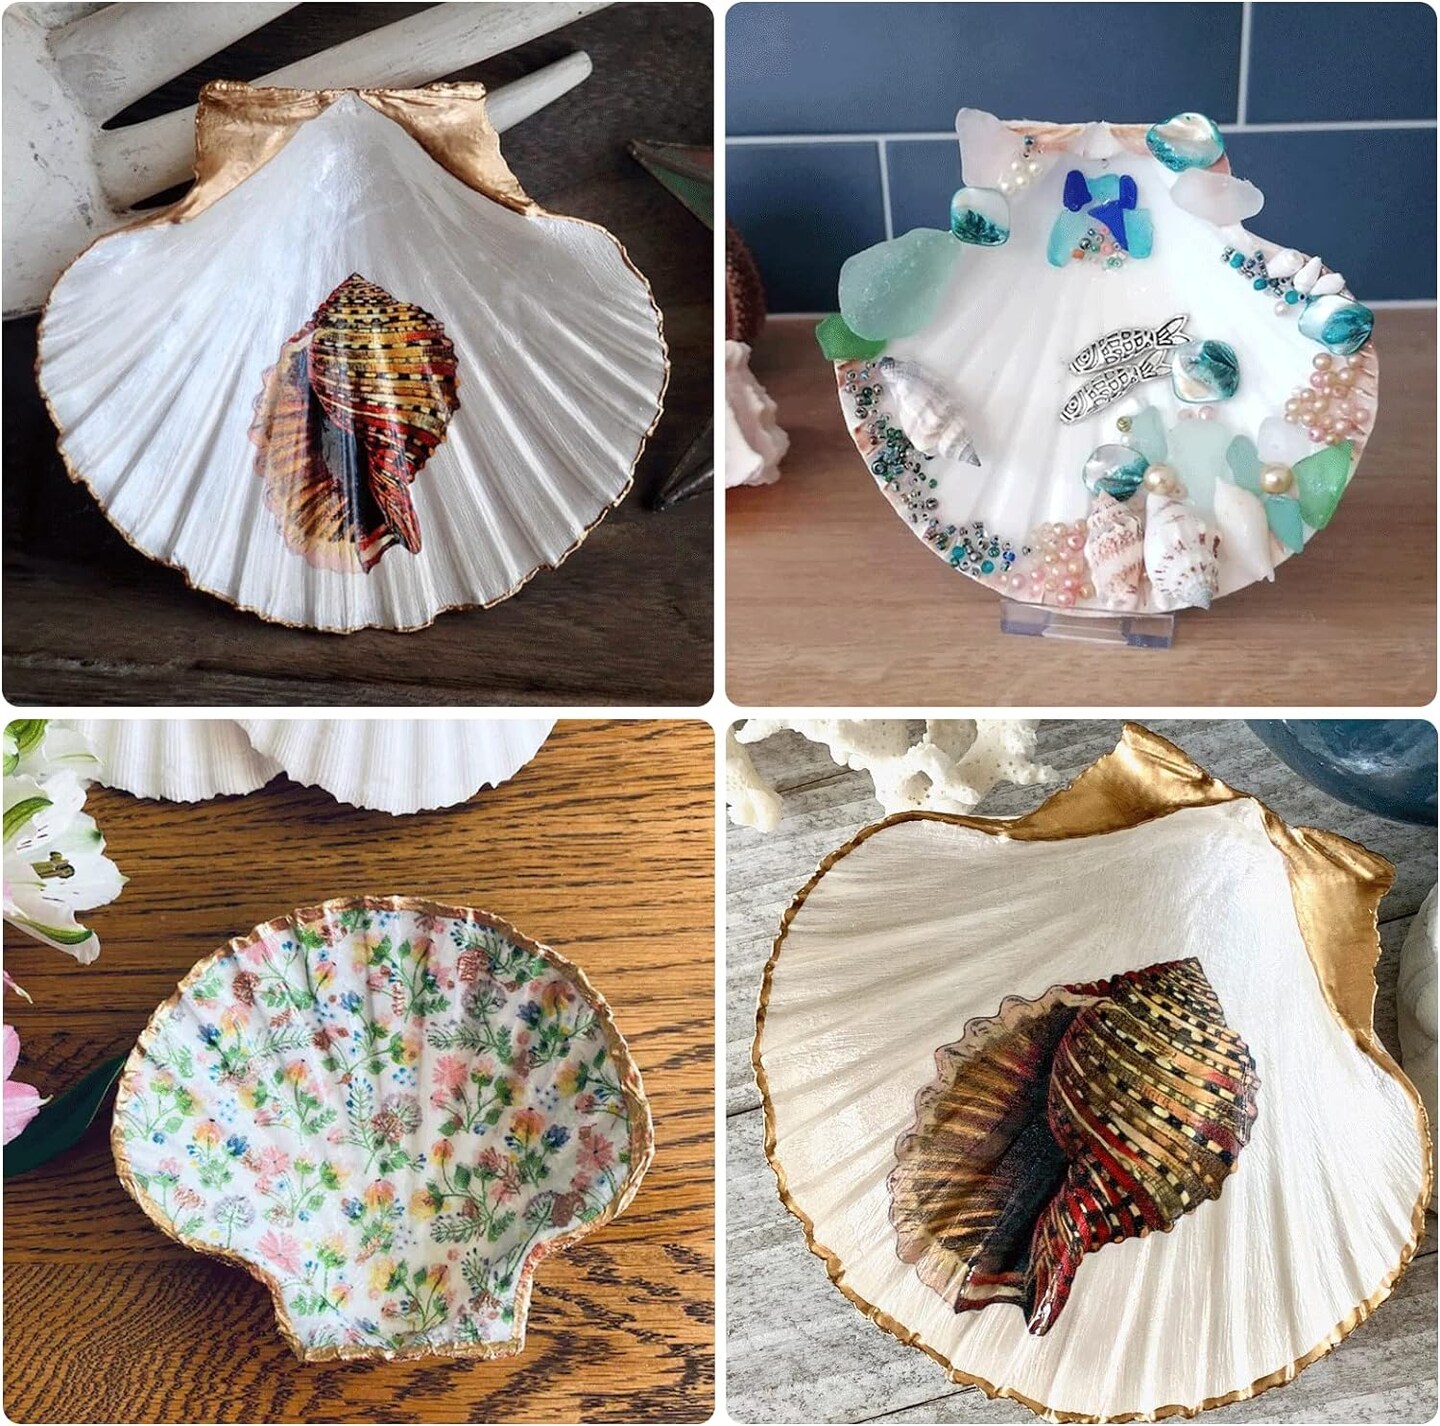 Natural Sea Shells for Crafting 6 pcs